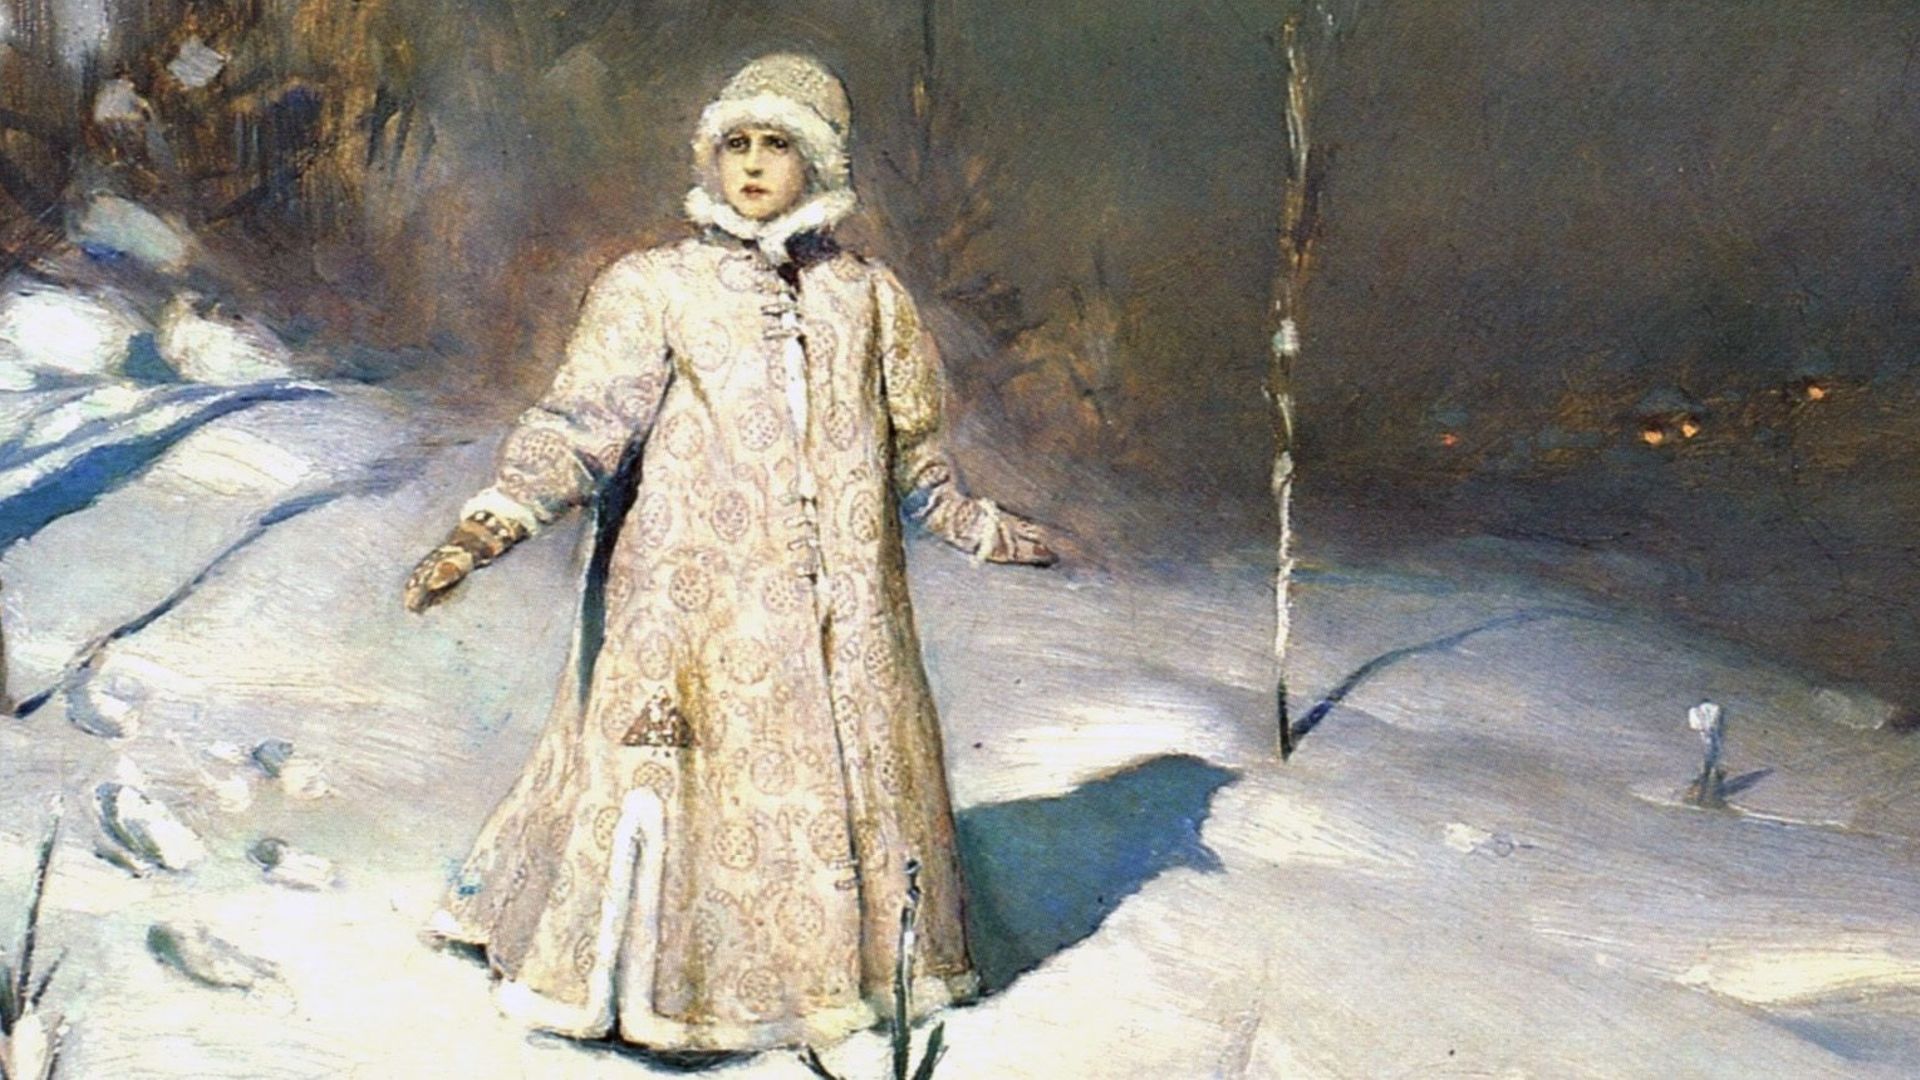 A l’origine de Blanche-Neige, le conte populaire russe Snégourotchka, mis en musique par Rimski-Korsakov